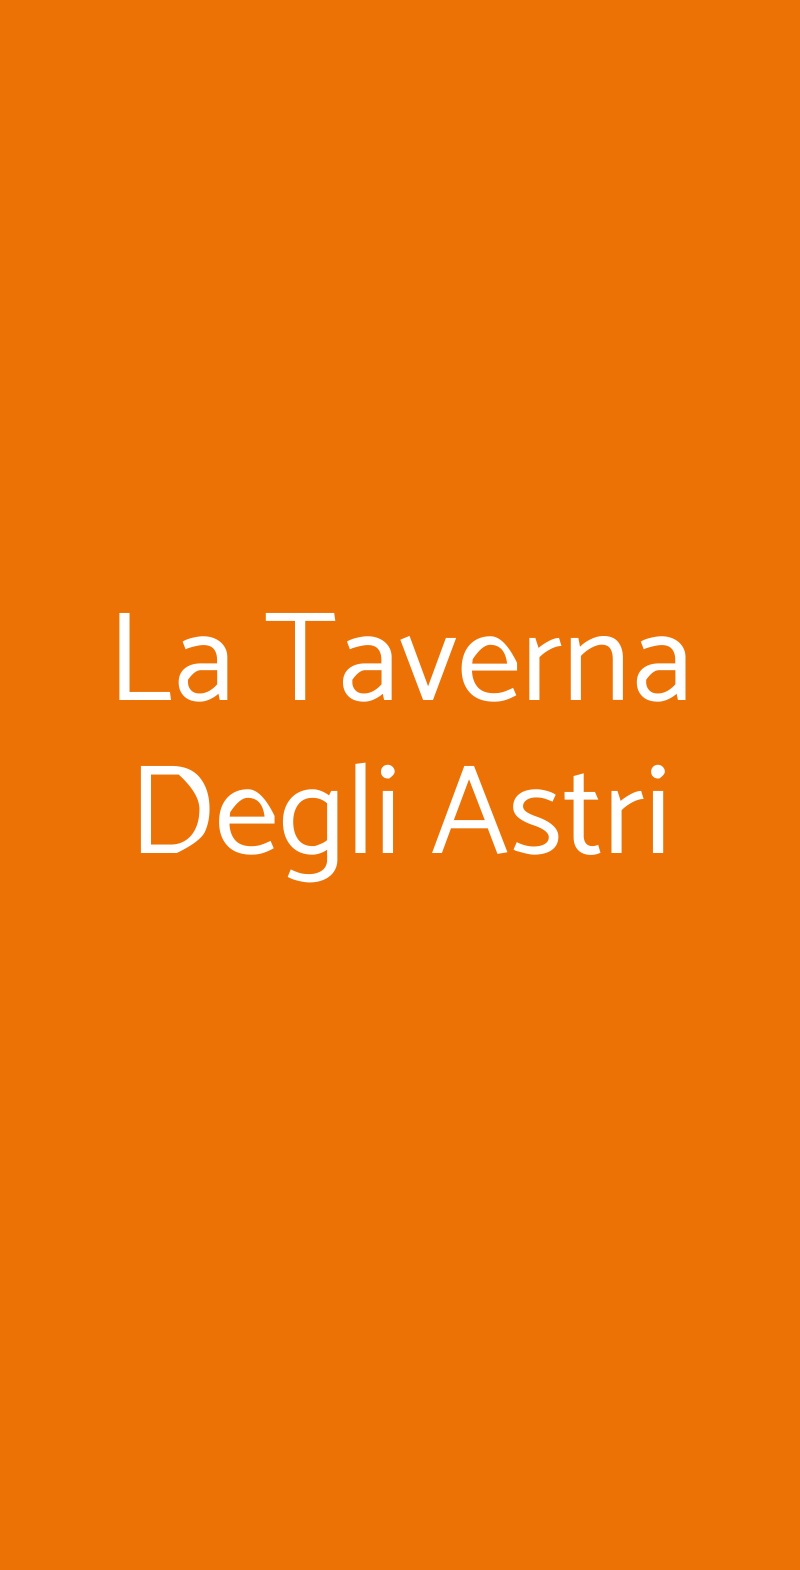 La Taverna Degli Astri Roma menù 1 pagina